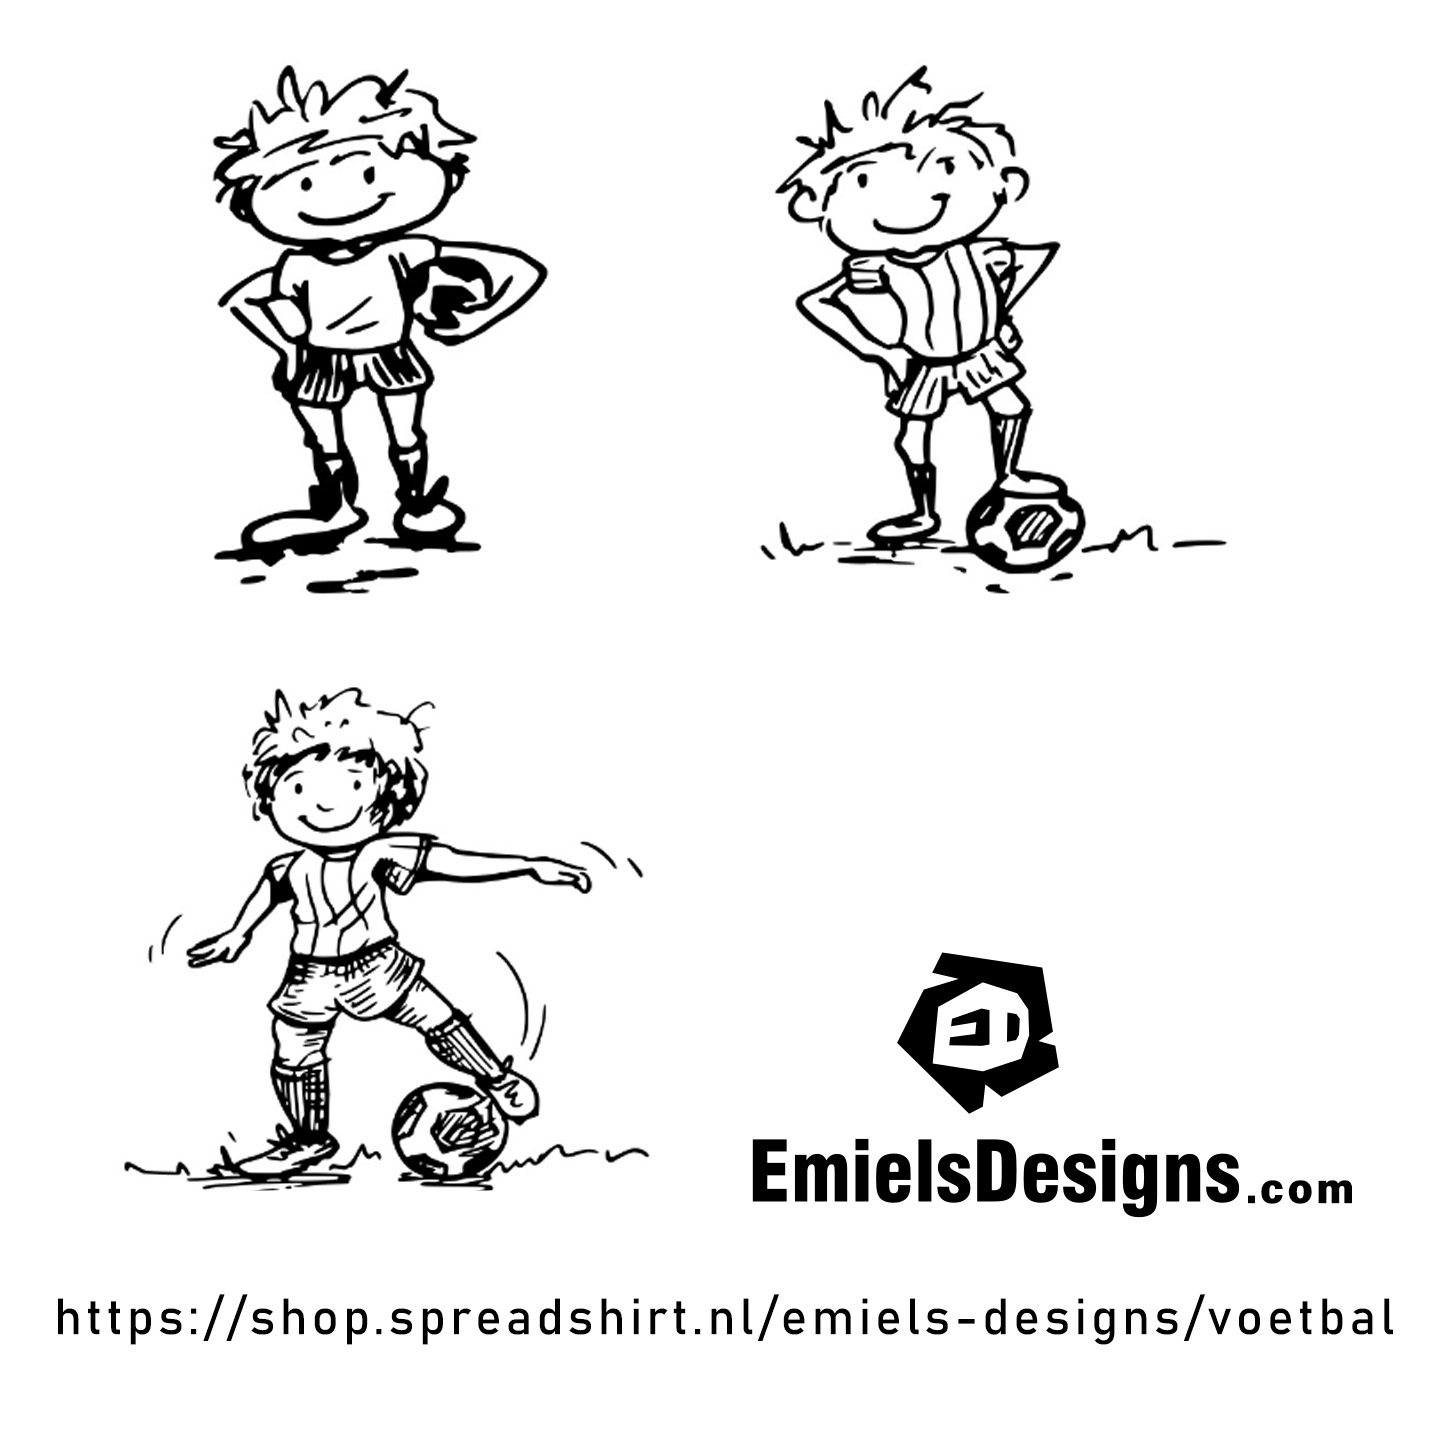 voetbal-illustratie-jongen-pentekeningjpg